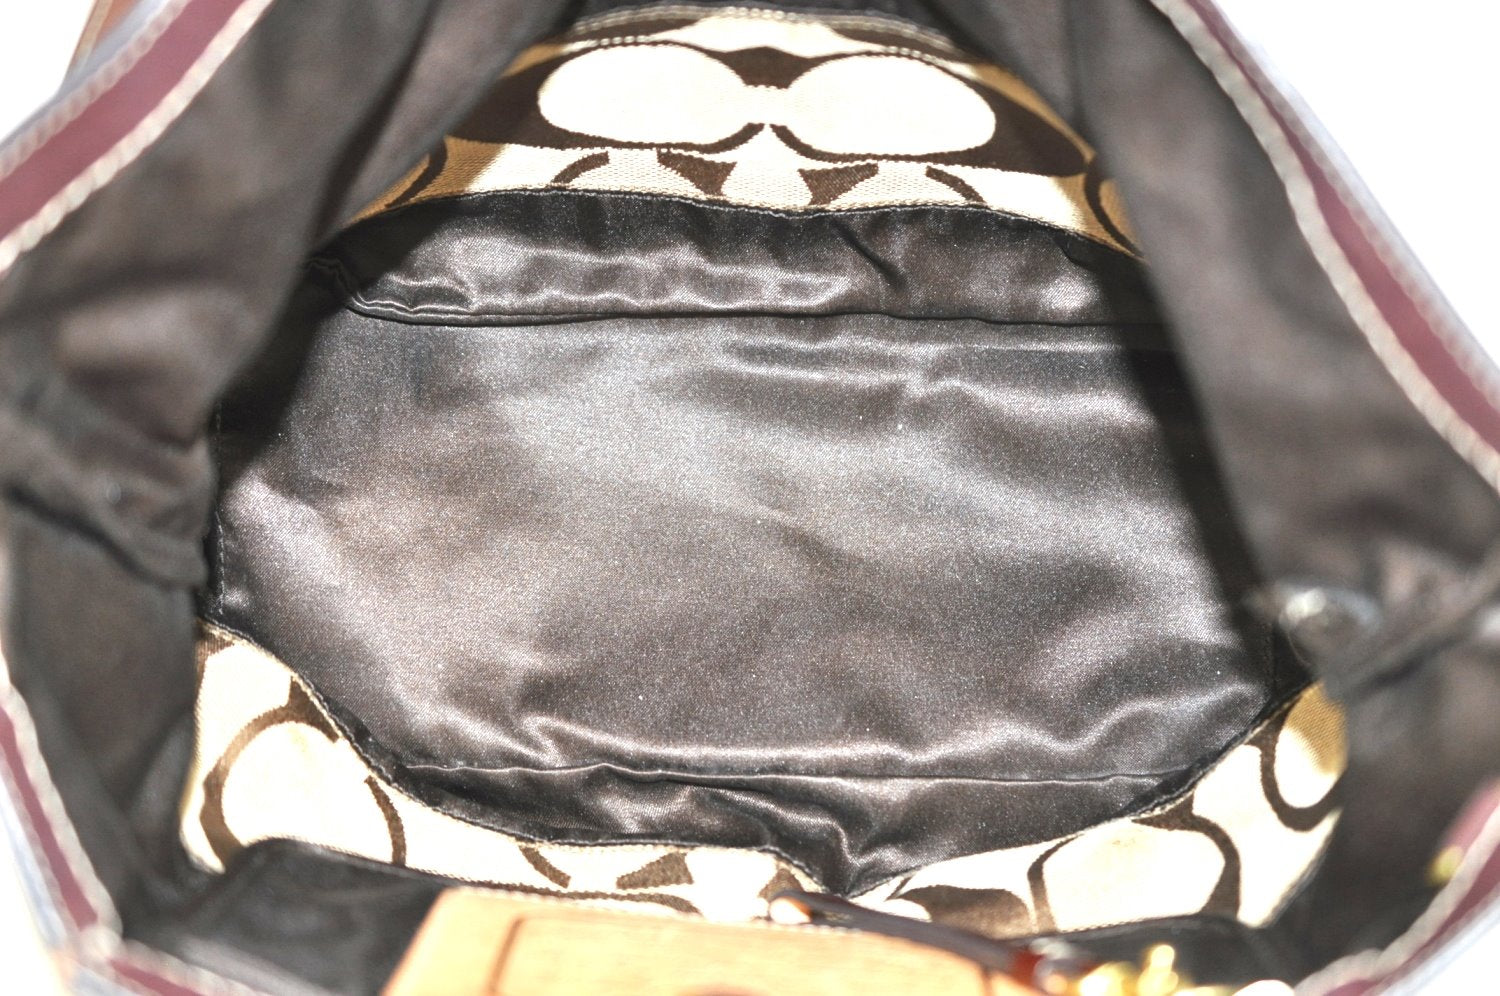 Authentic COACH Signature Shoulder Tote Bag Canvas Enamel 10124 Brown K4356